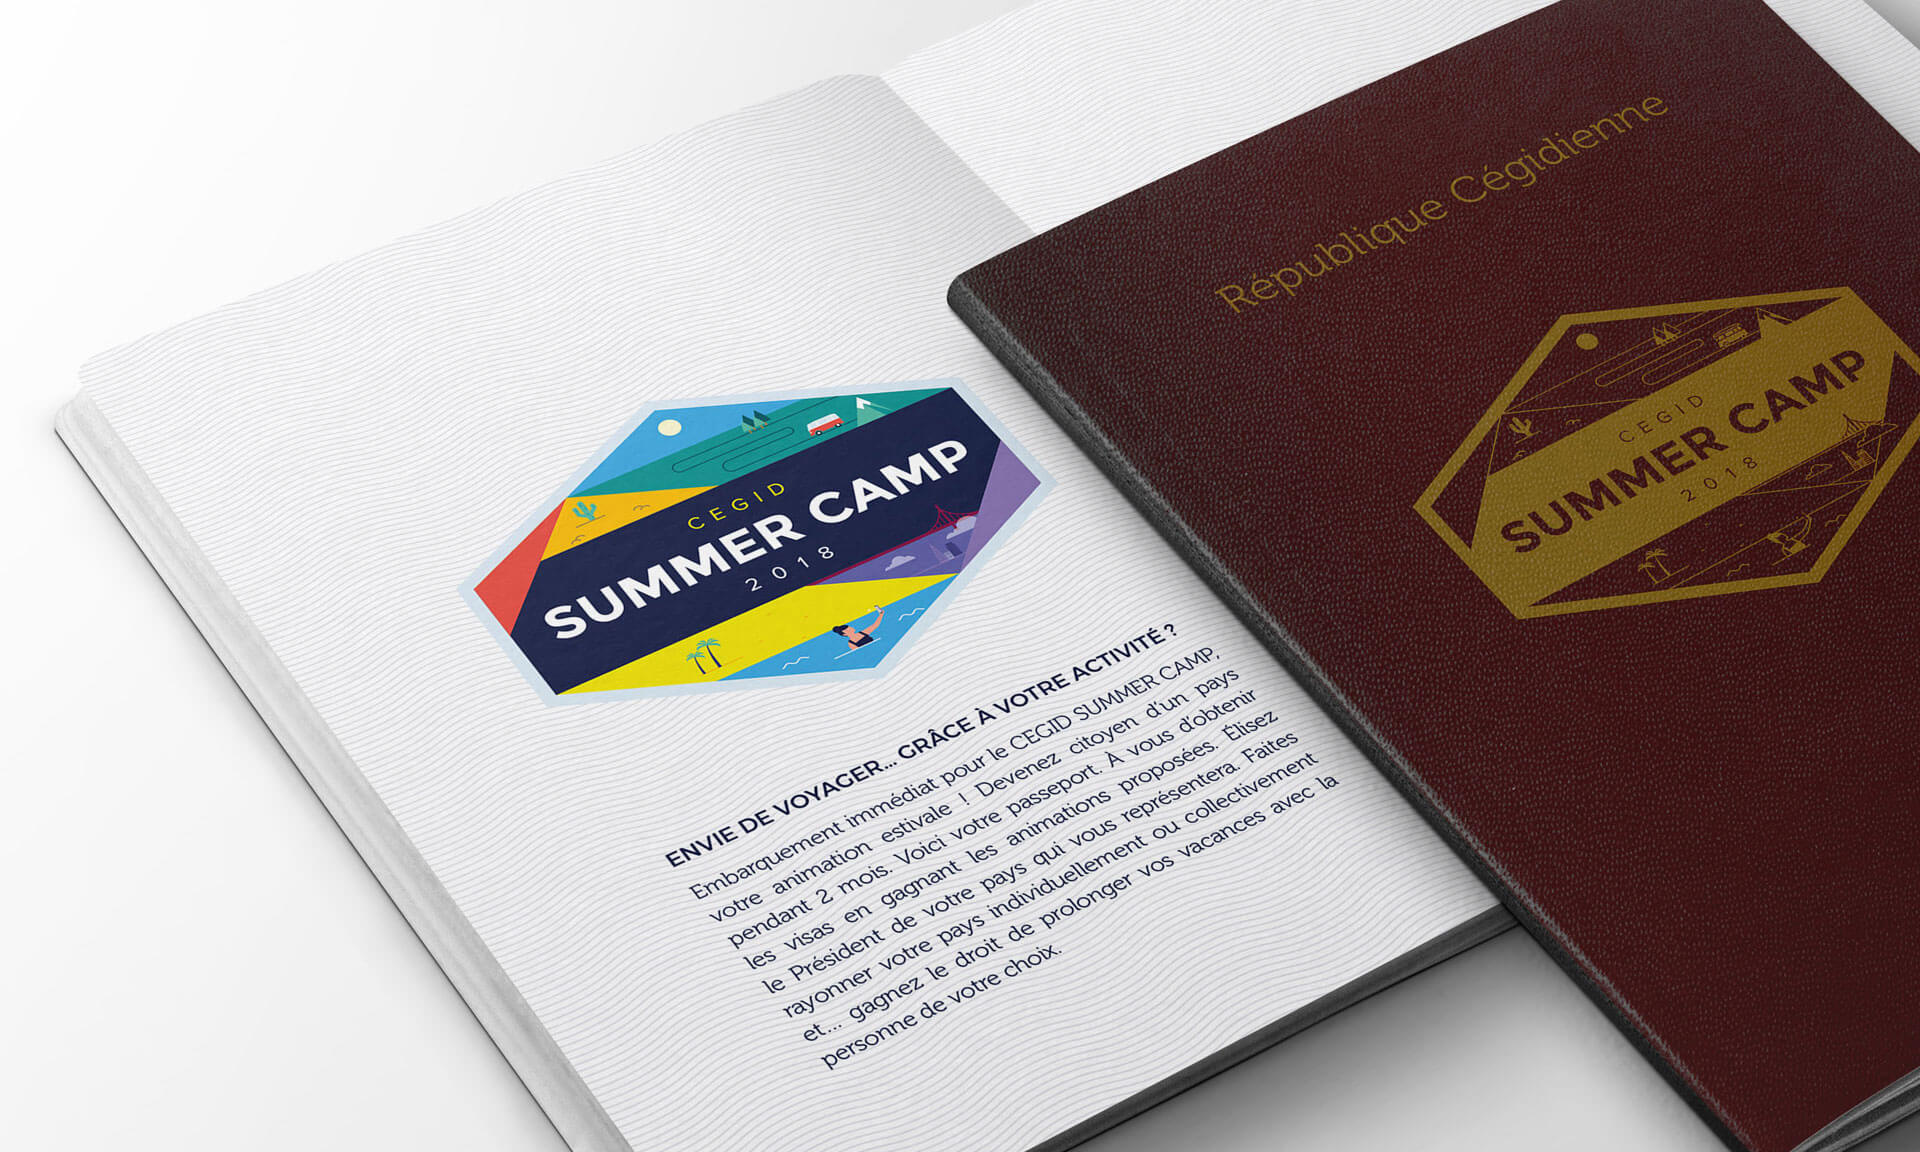 cegid-summercamp-cover